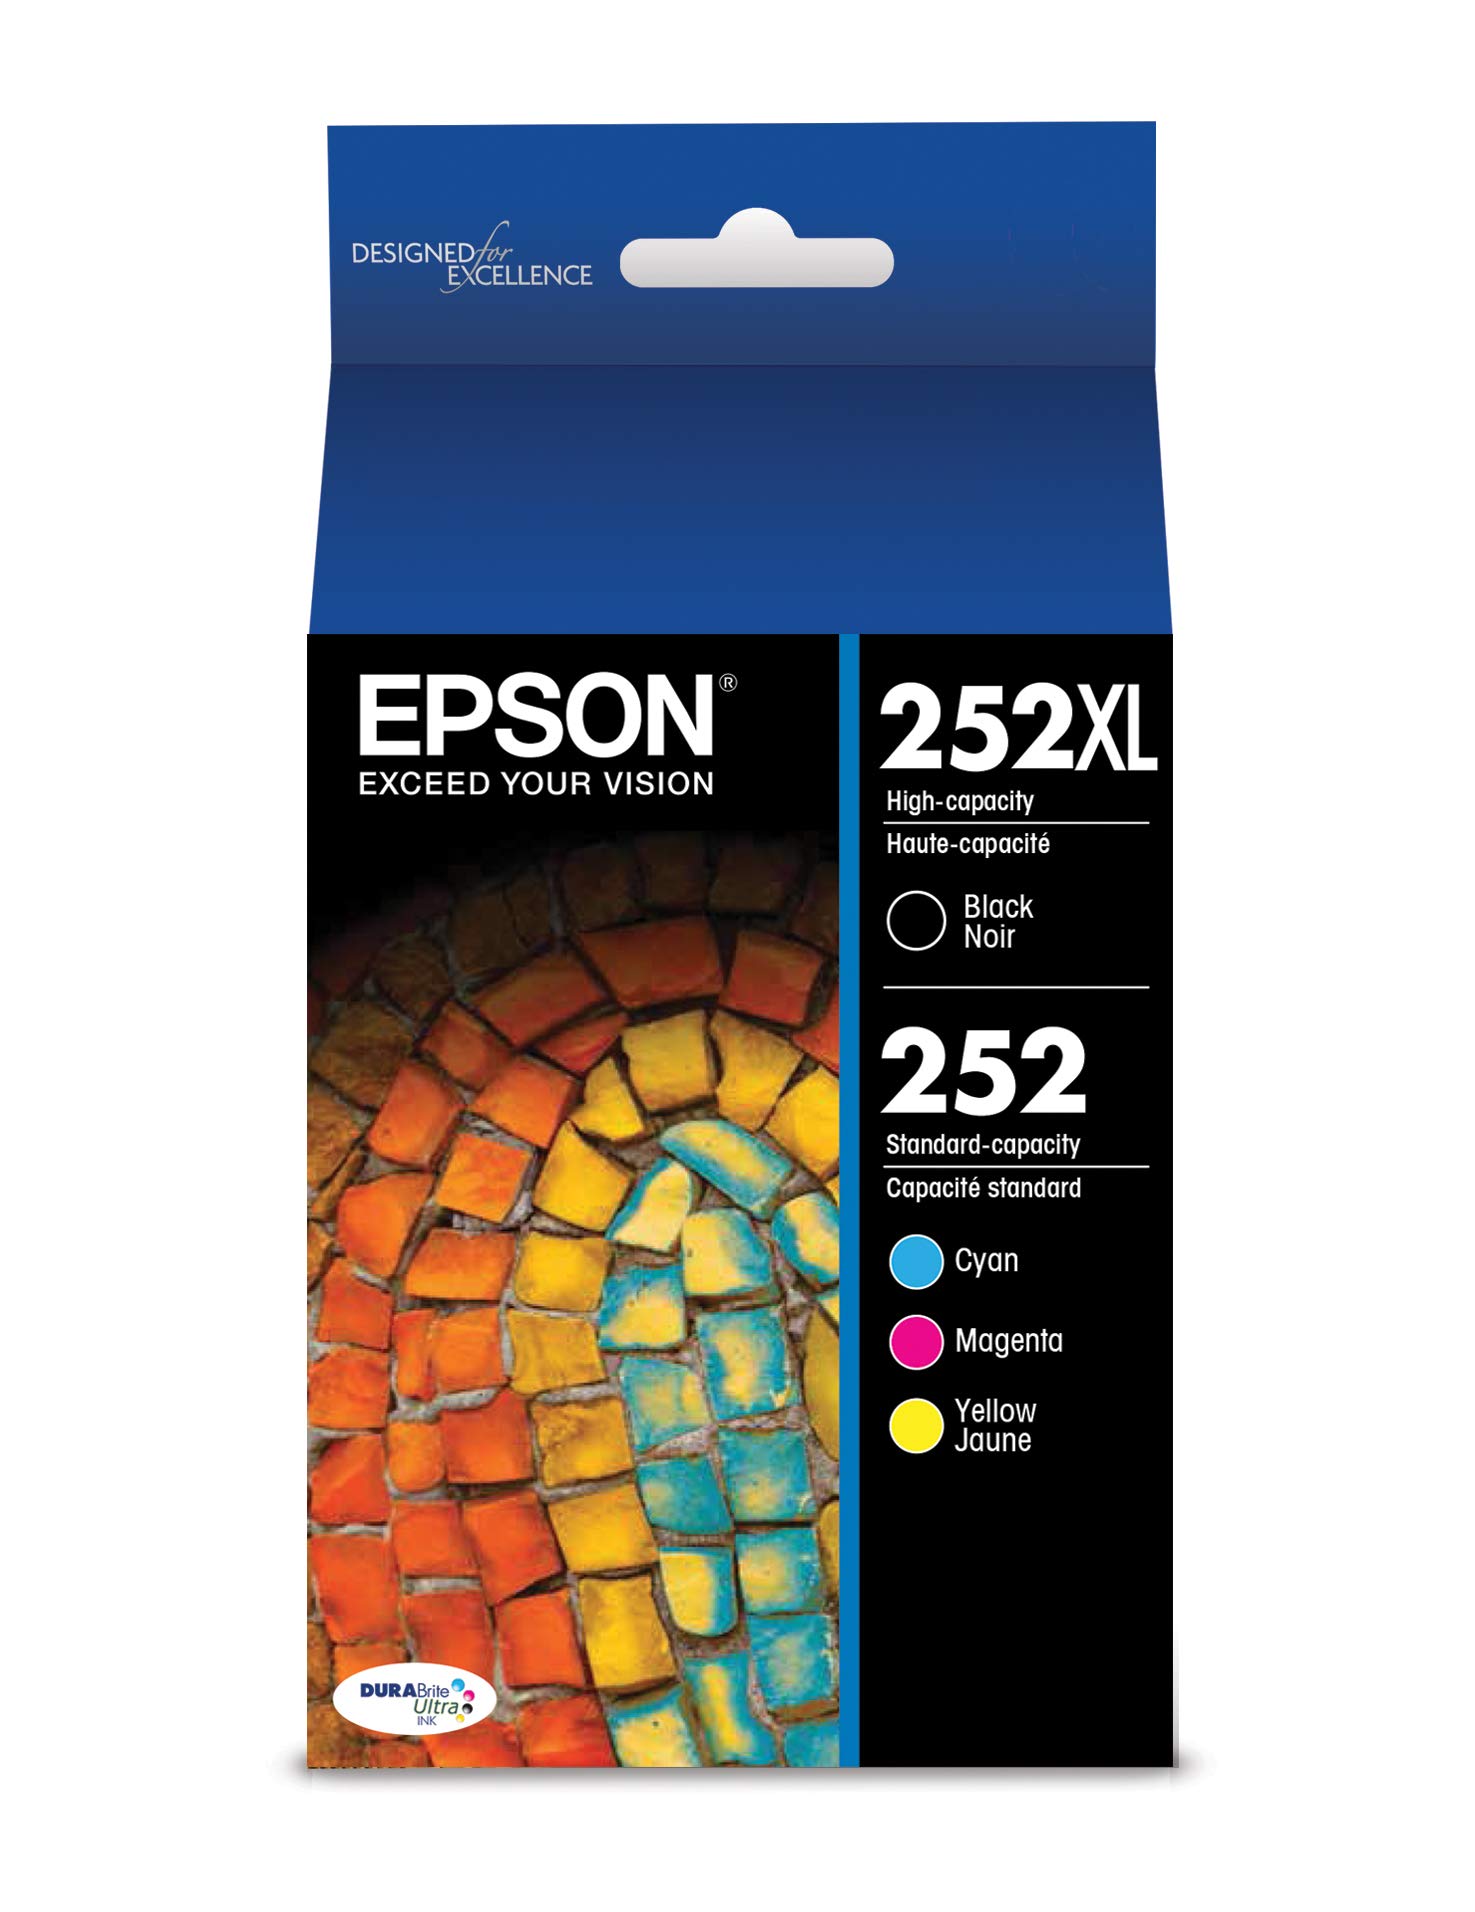 Epson 252XL/252 高印量黑色和标准印量青色/品红色/黄色墨盒，4 件装（型号 T252XL-BC...